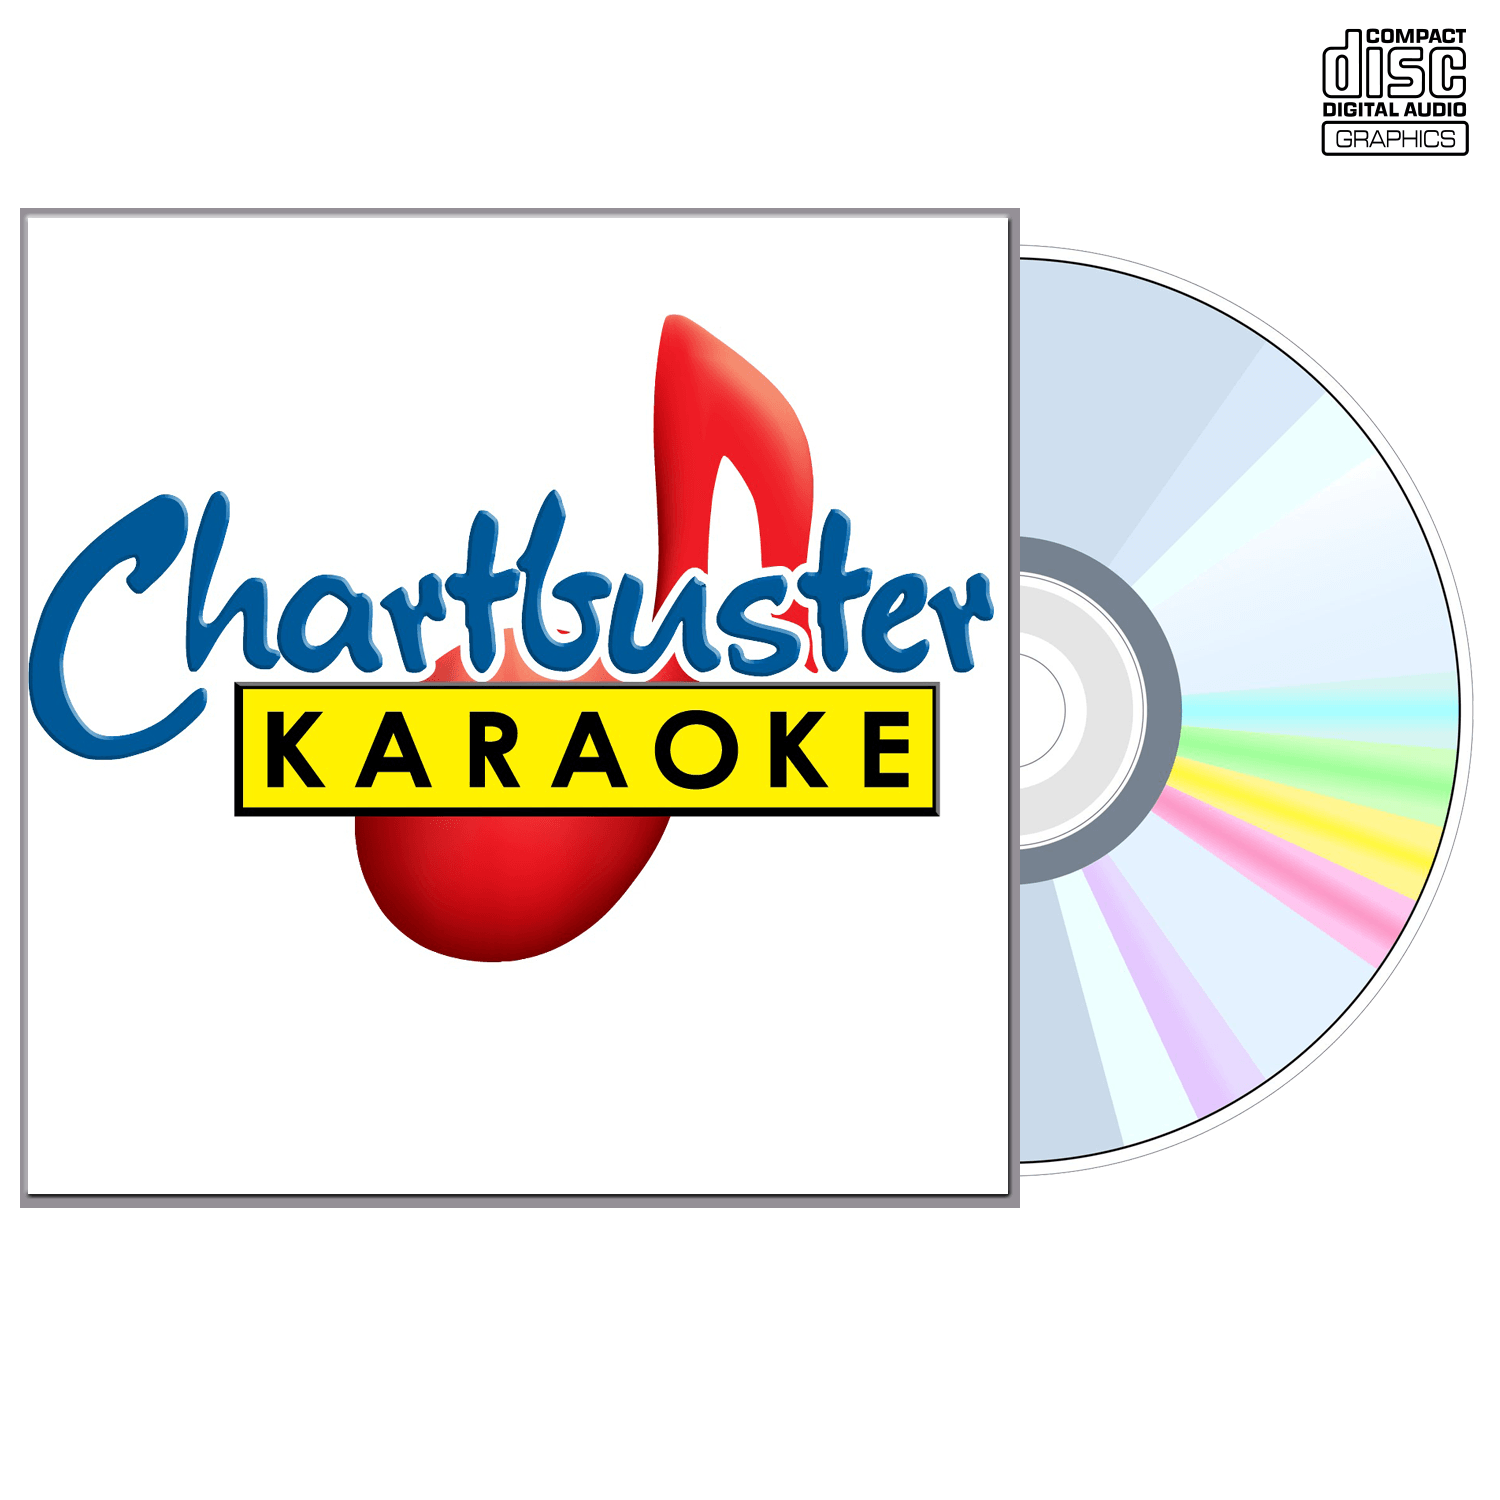 Wade Hayes - CD+G - Chartbuster Karaoke - Karaoke Home Entertainment